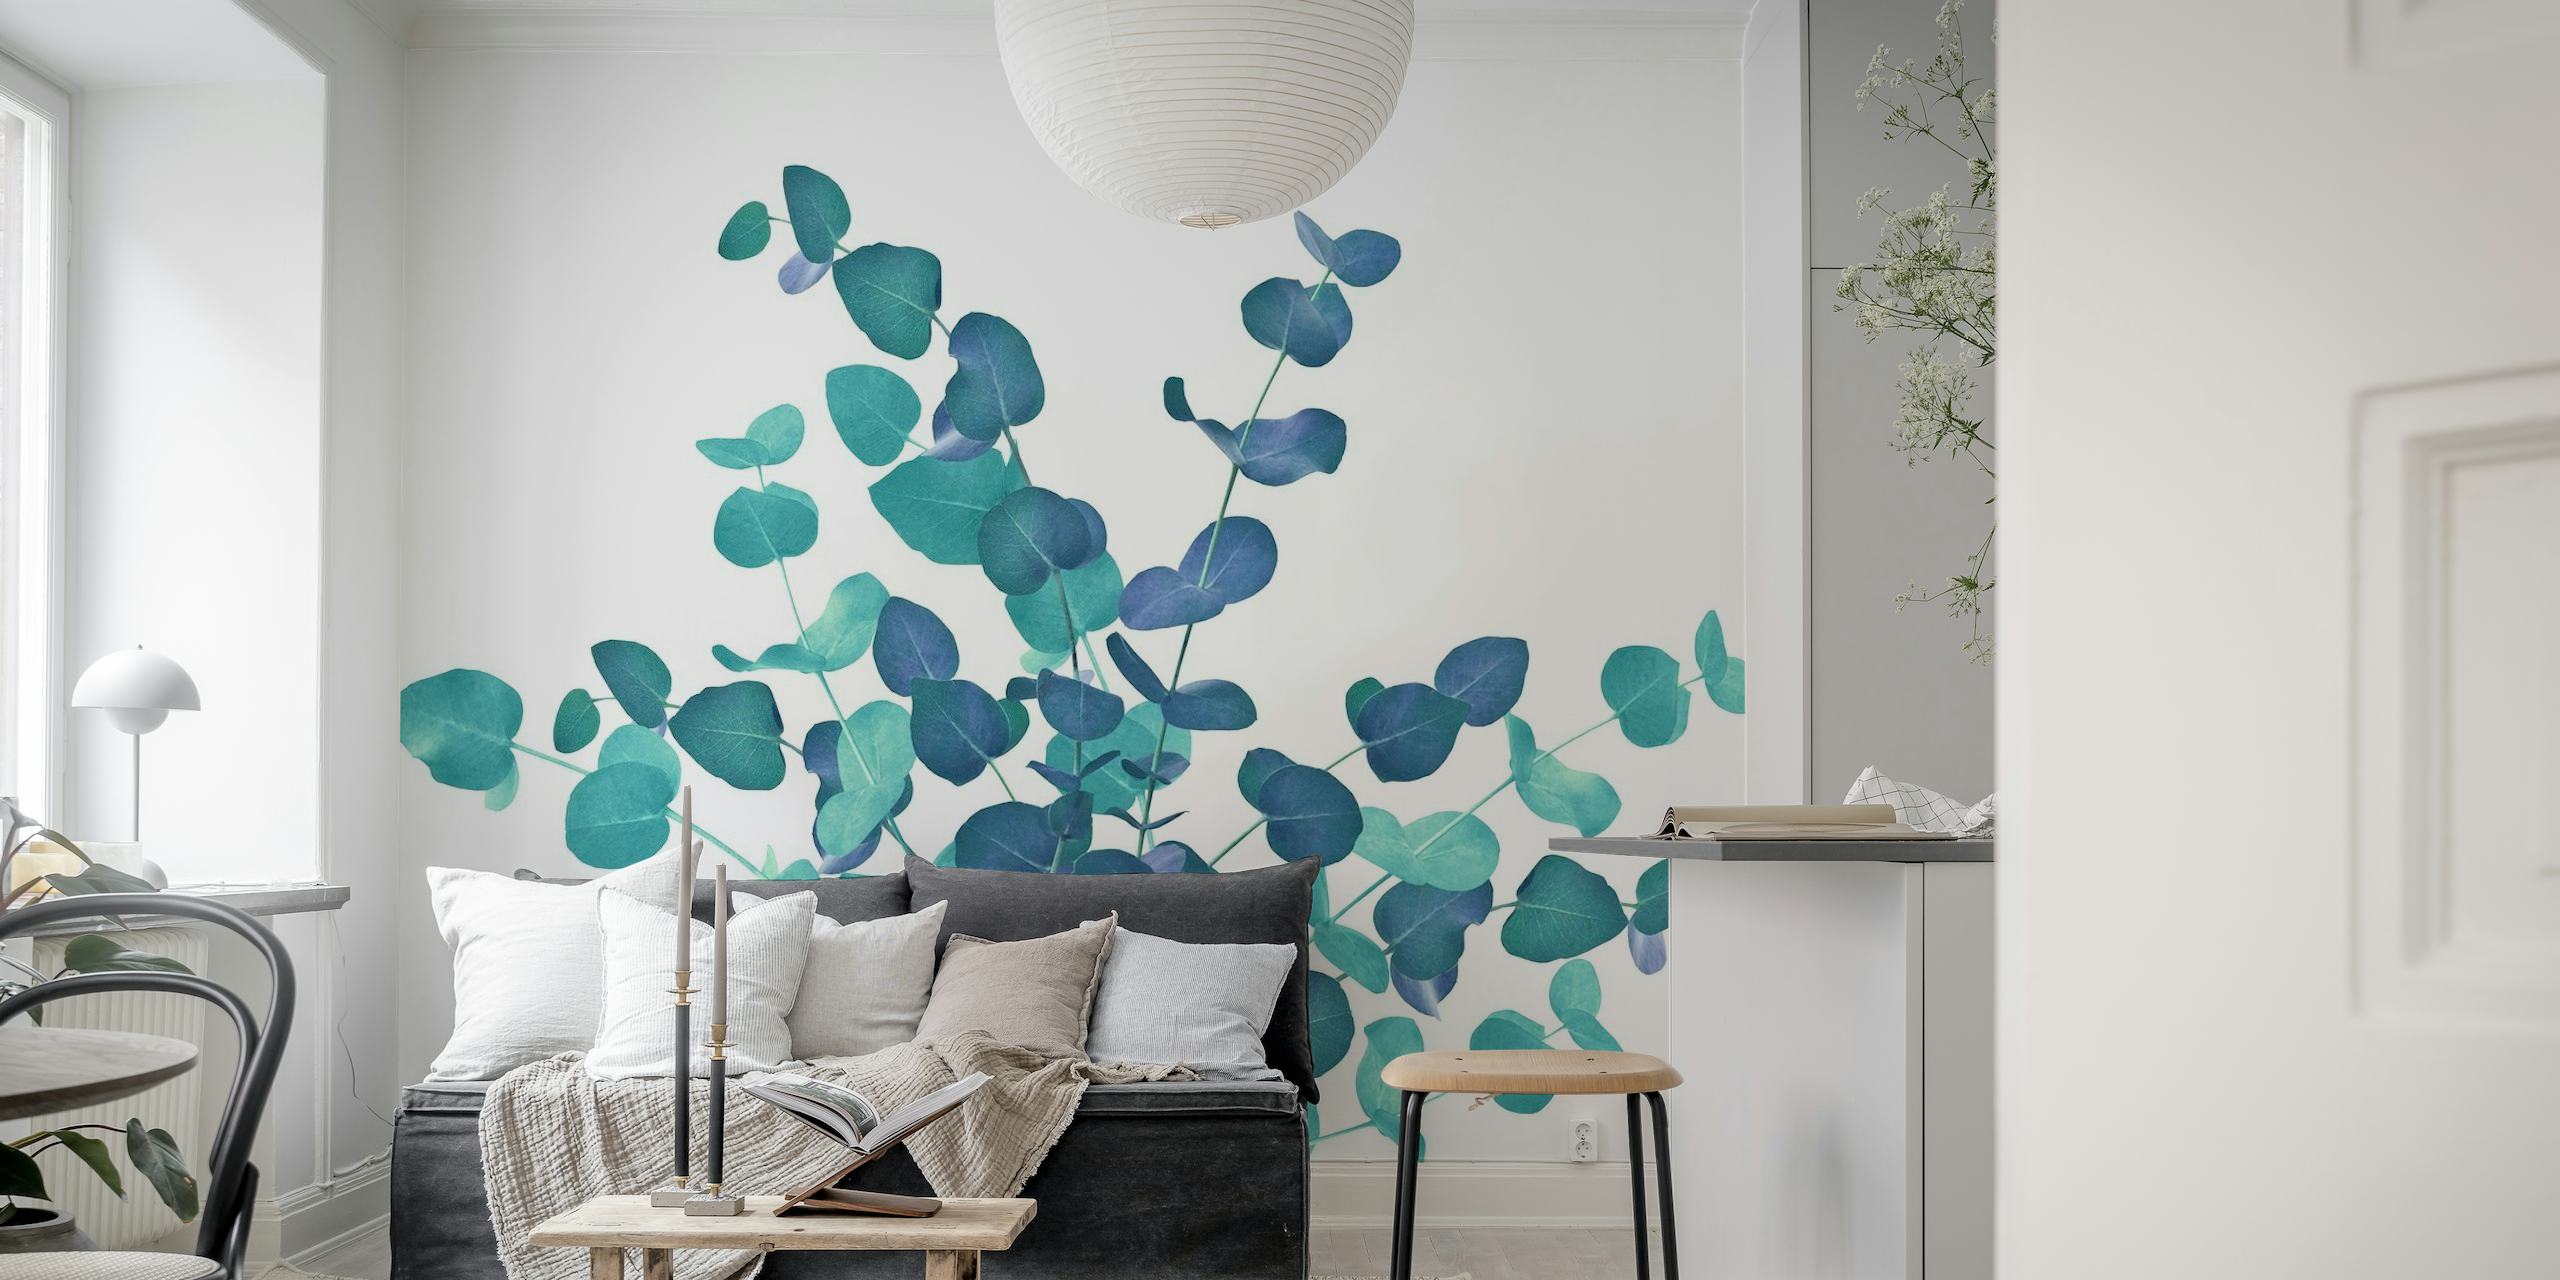 Il murale con foglie di eucalipto nei toni del blu crea una serena esposizione botanica